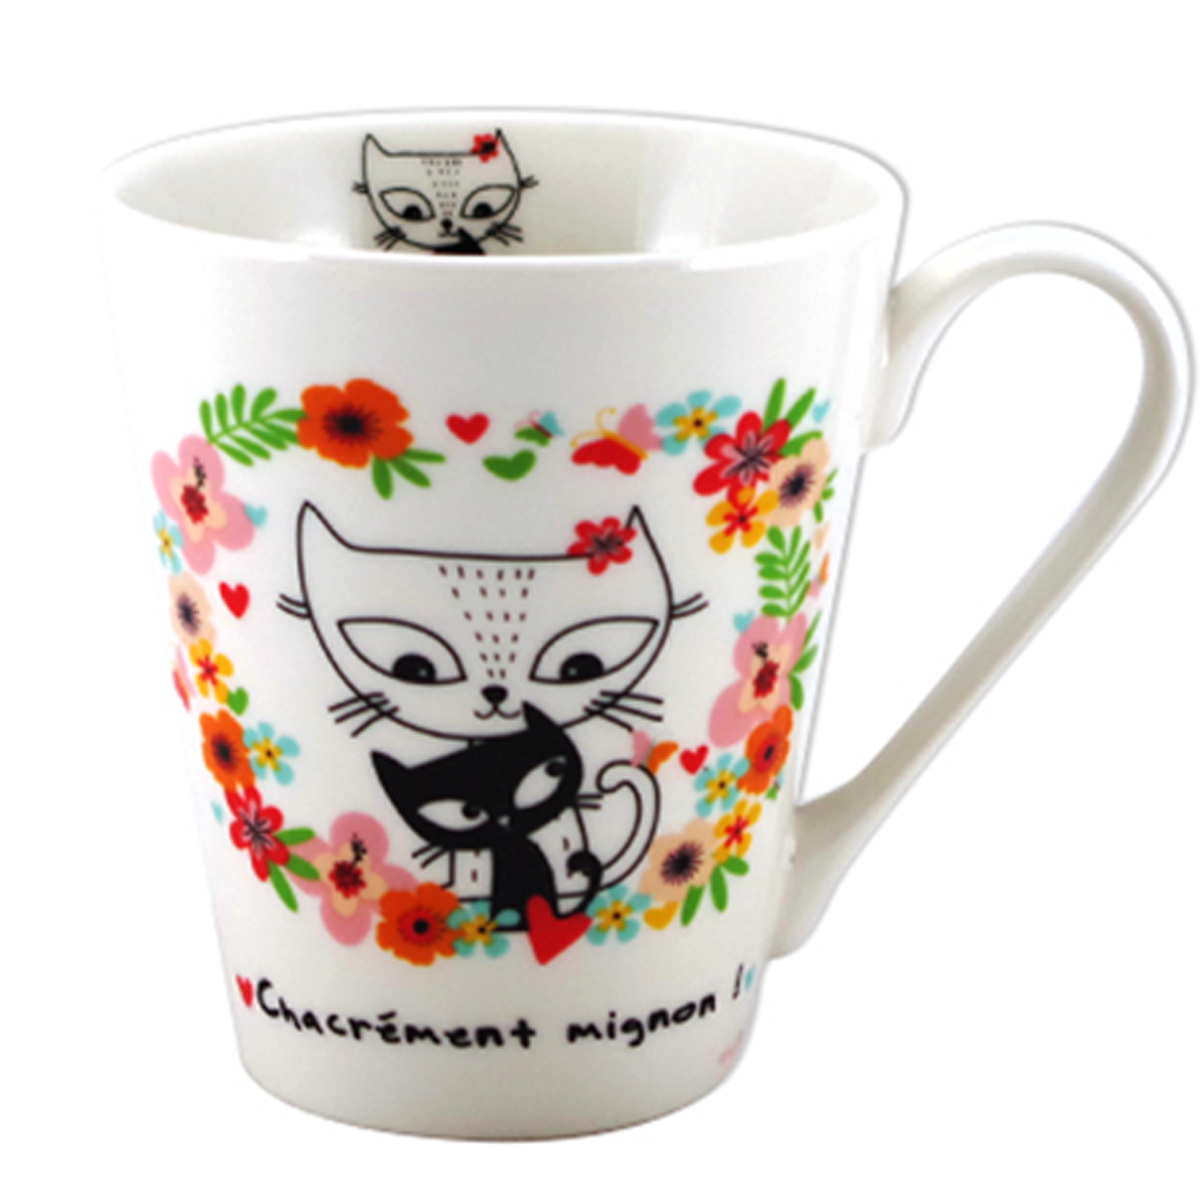 Mug porcelaine \'Chats\' multicolore (Chacrément mignon !) - 100x85 mm (32 cl) - [A2175]